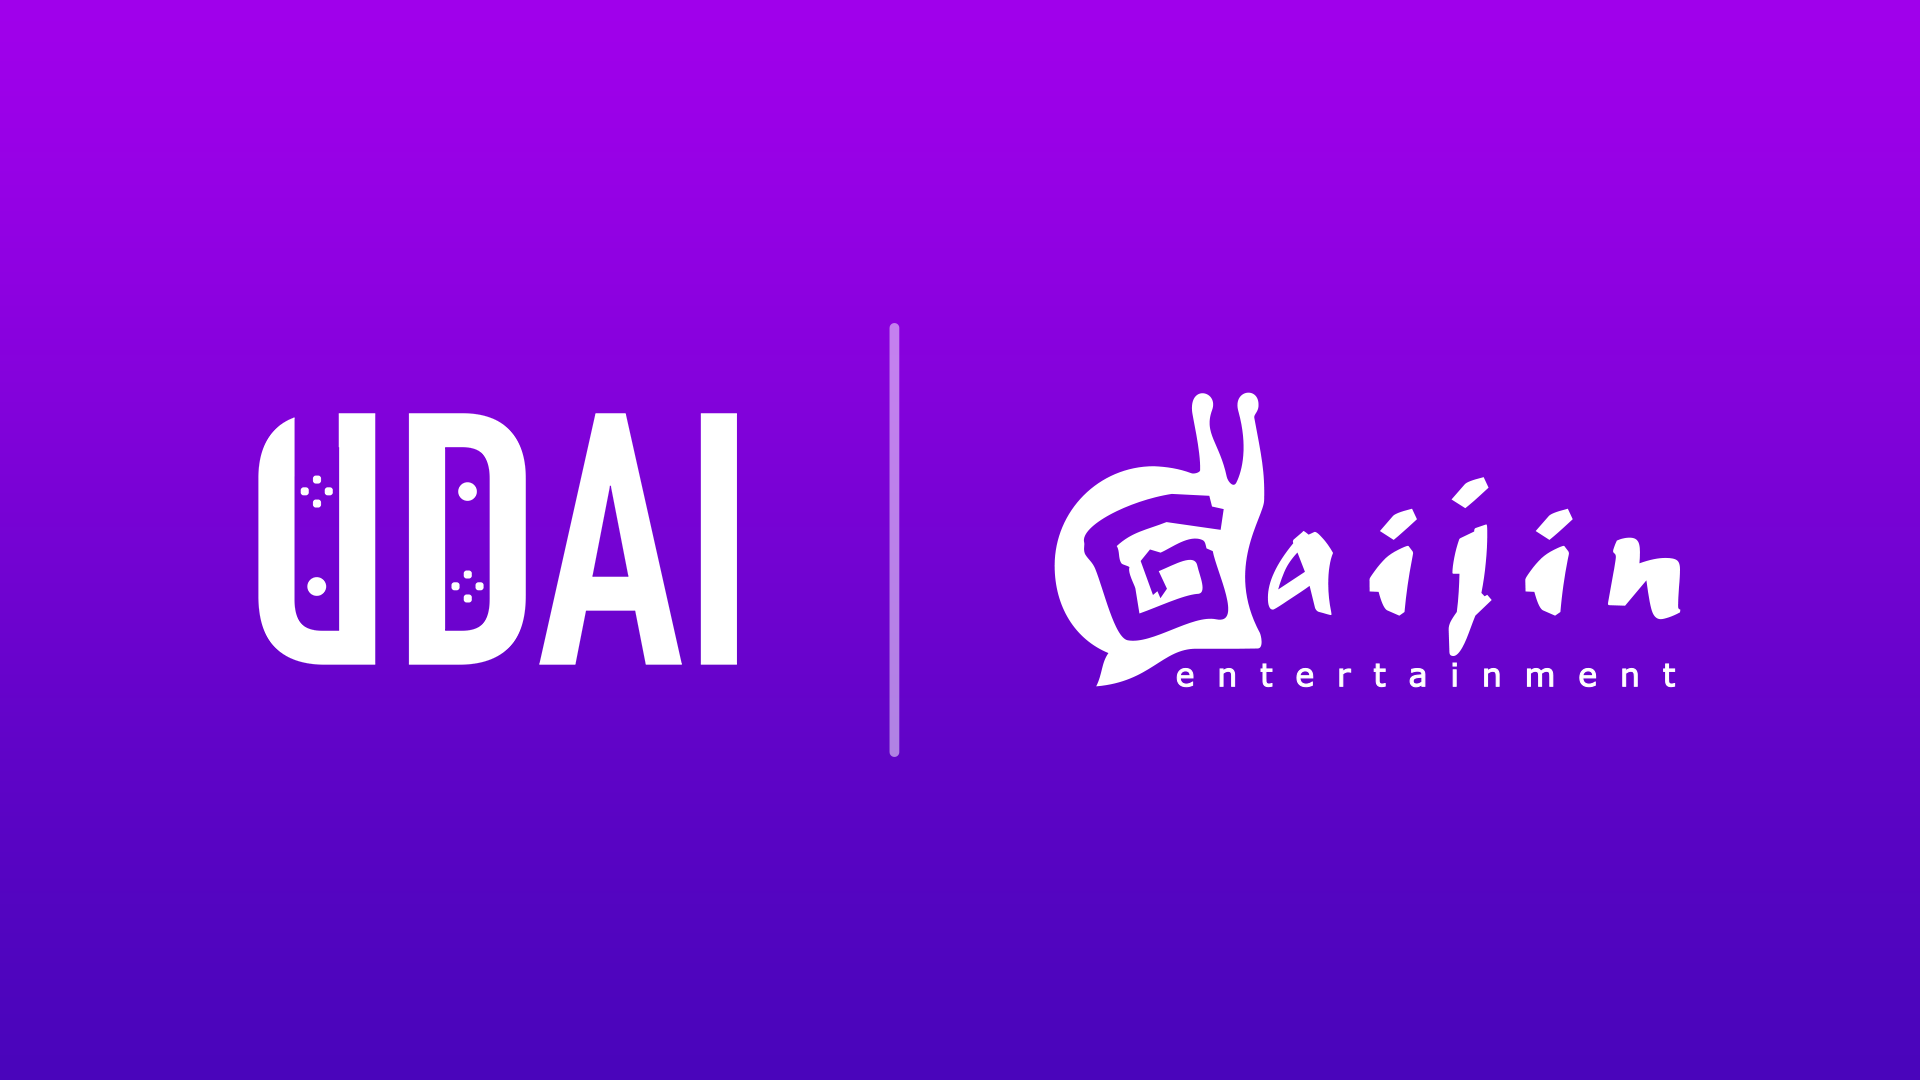 Платежная платформа UDAI и Gaijin Entertainment начали сотрудничество по приему платежей